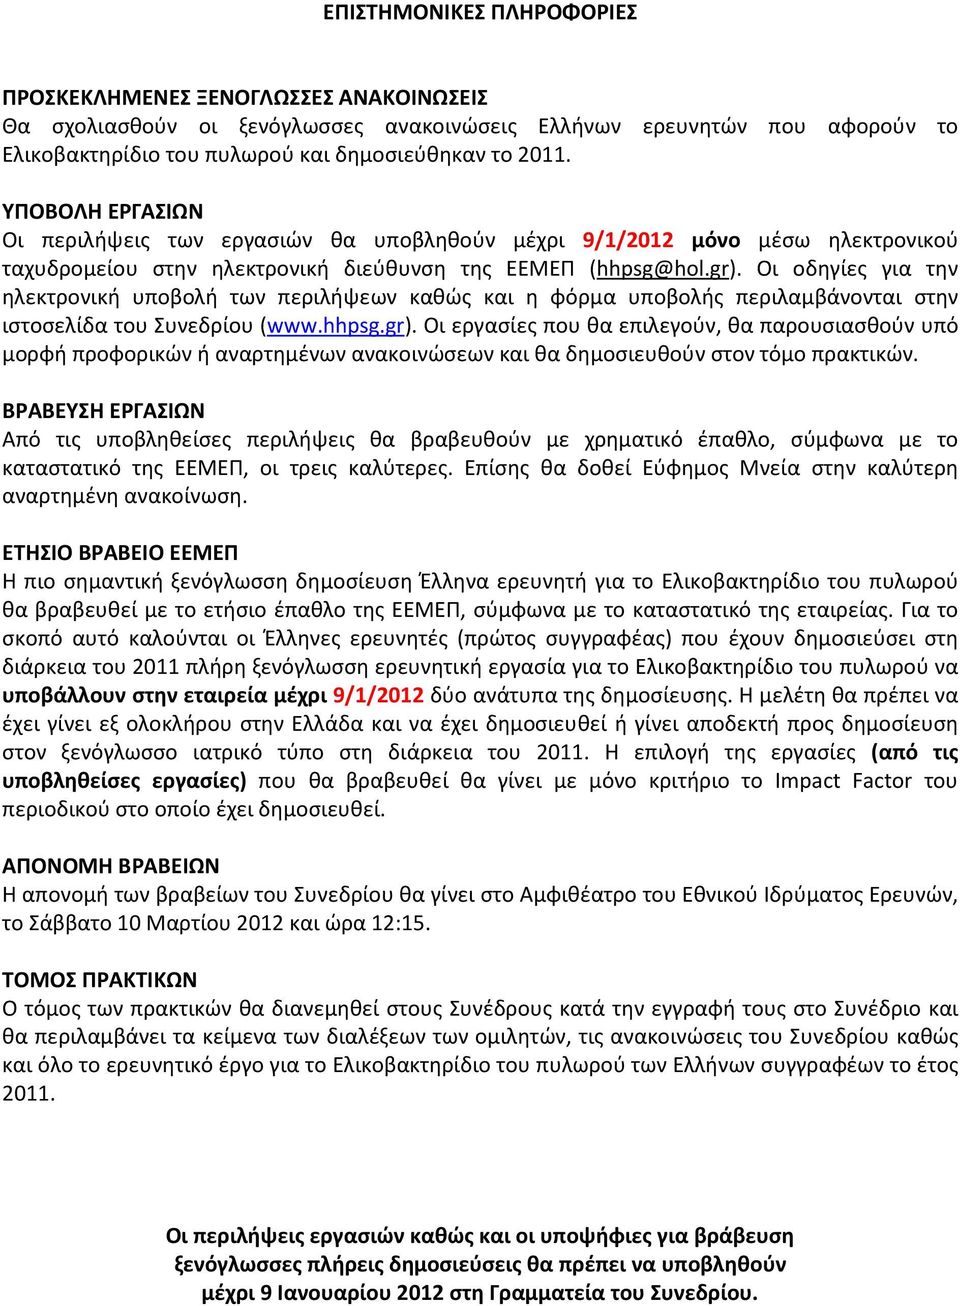 Οι οδηγίες για την ηλεκτρονική υποβολή των περιλήψεων καθώς και η φόρμα υποβολής περιλαμβάνονται στην ιστοσελίδα του Συνεδρίου (www.hhpsg.gr).